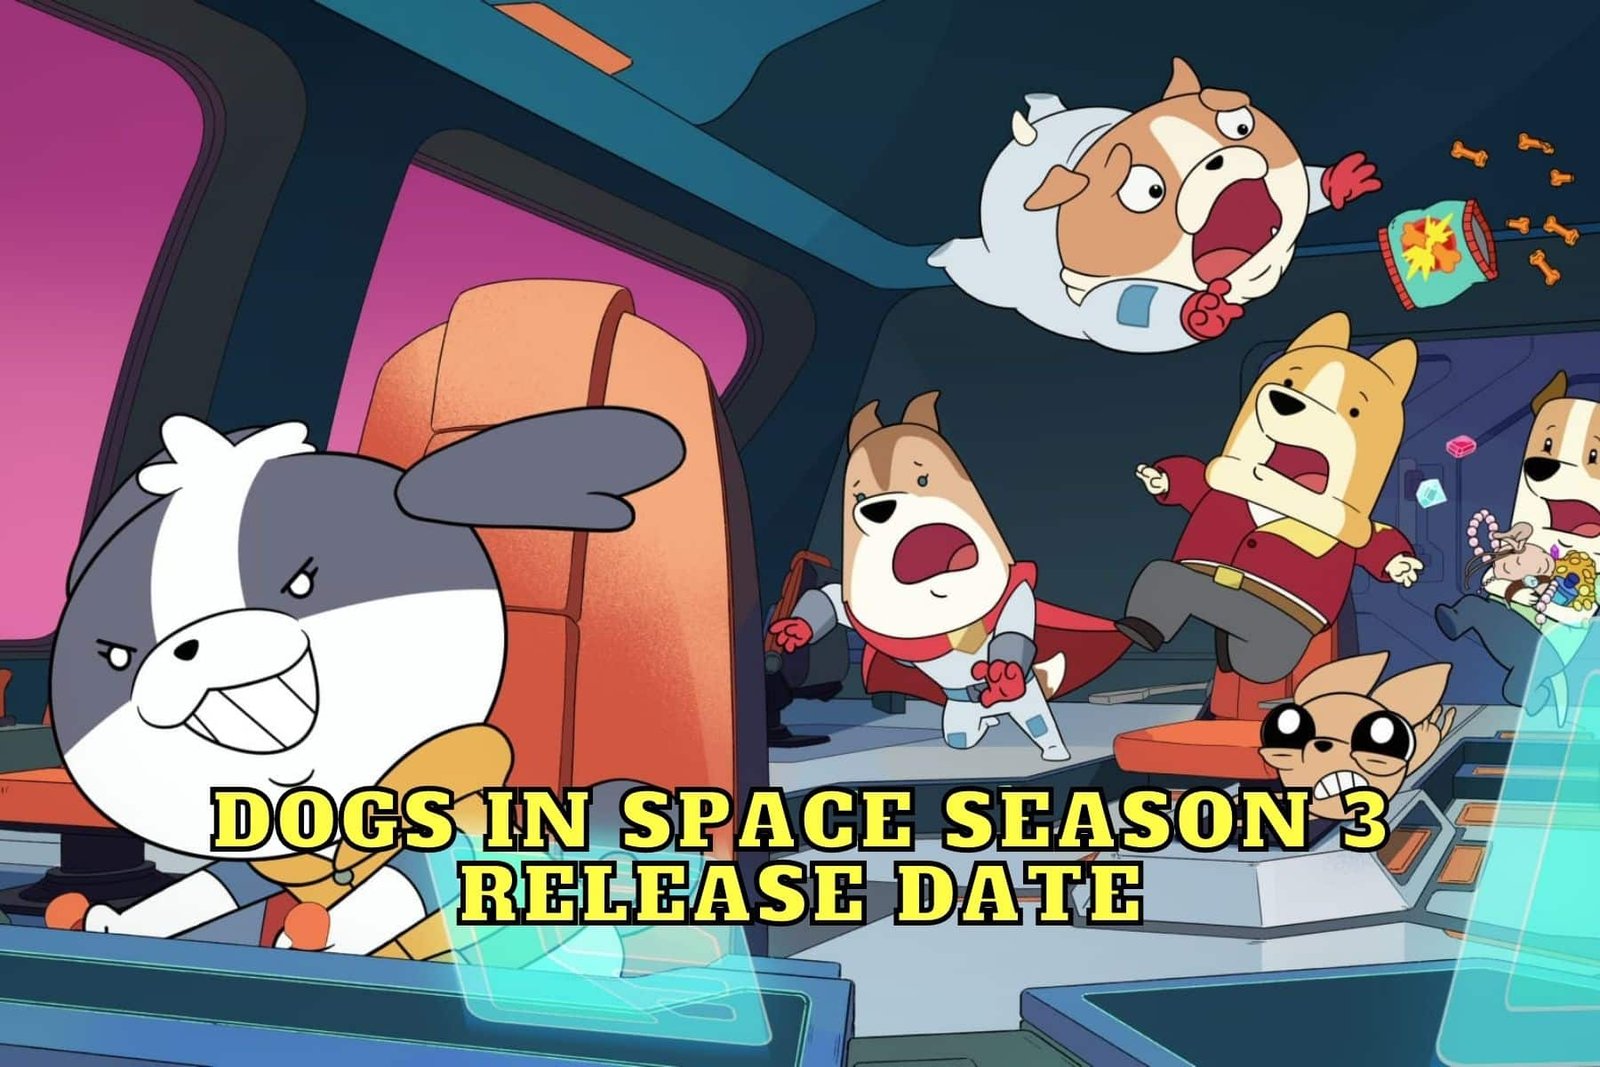 Dogs in Space Season 3 Release Date, Trailer